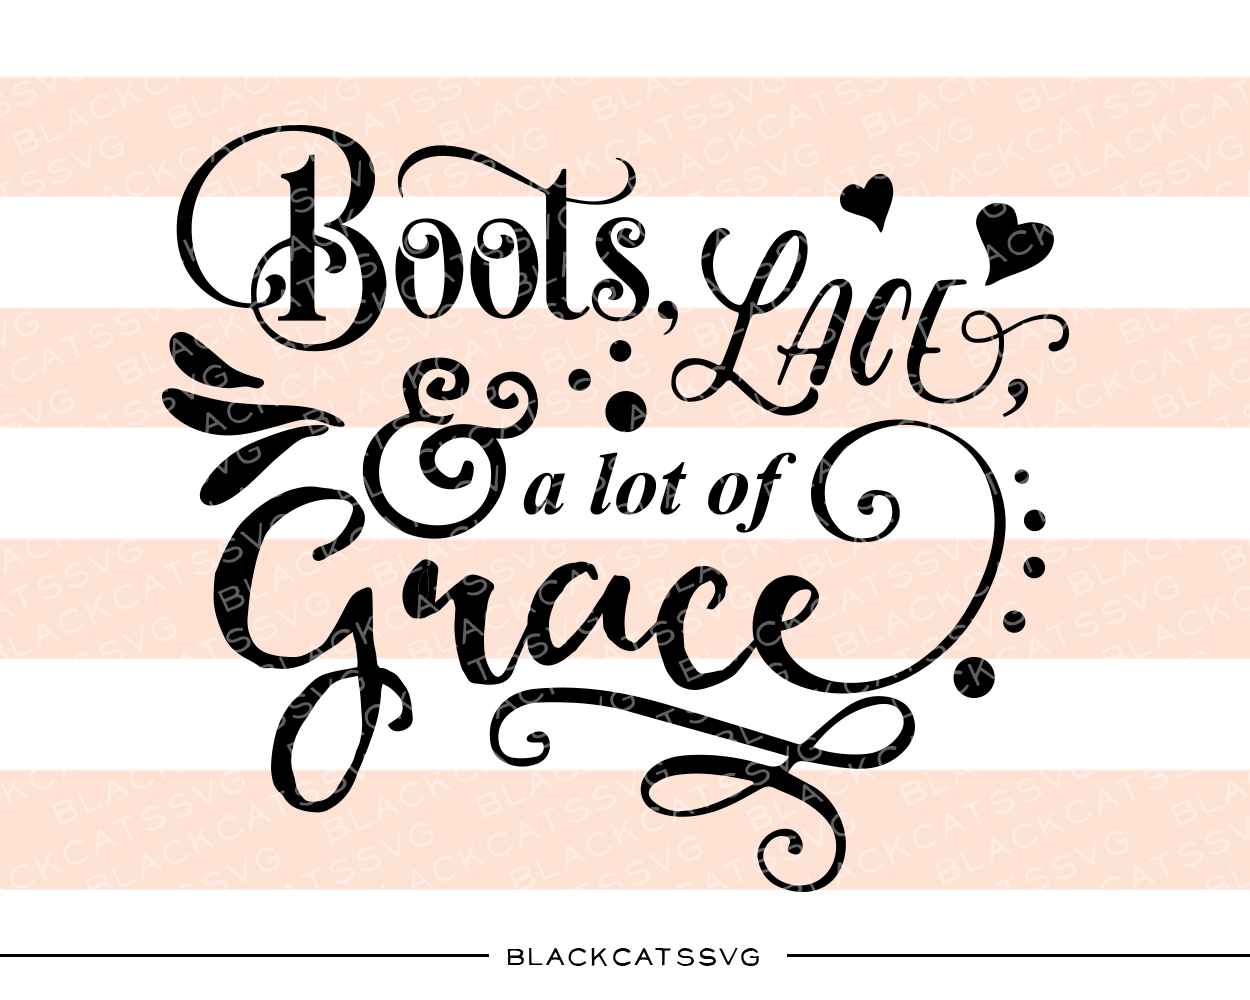 Boots, Lace & a Lot of Grace Cowgirl Plik rękodzieła do wycinania Przez BlackCatsSVG